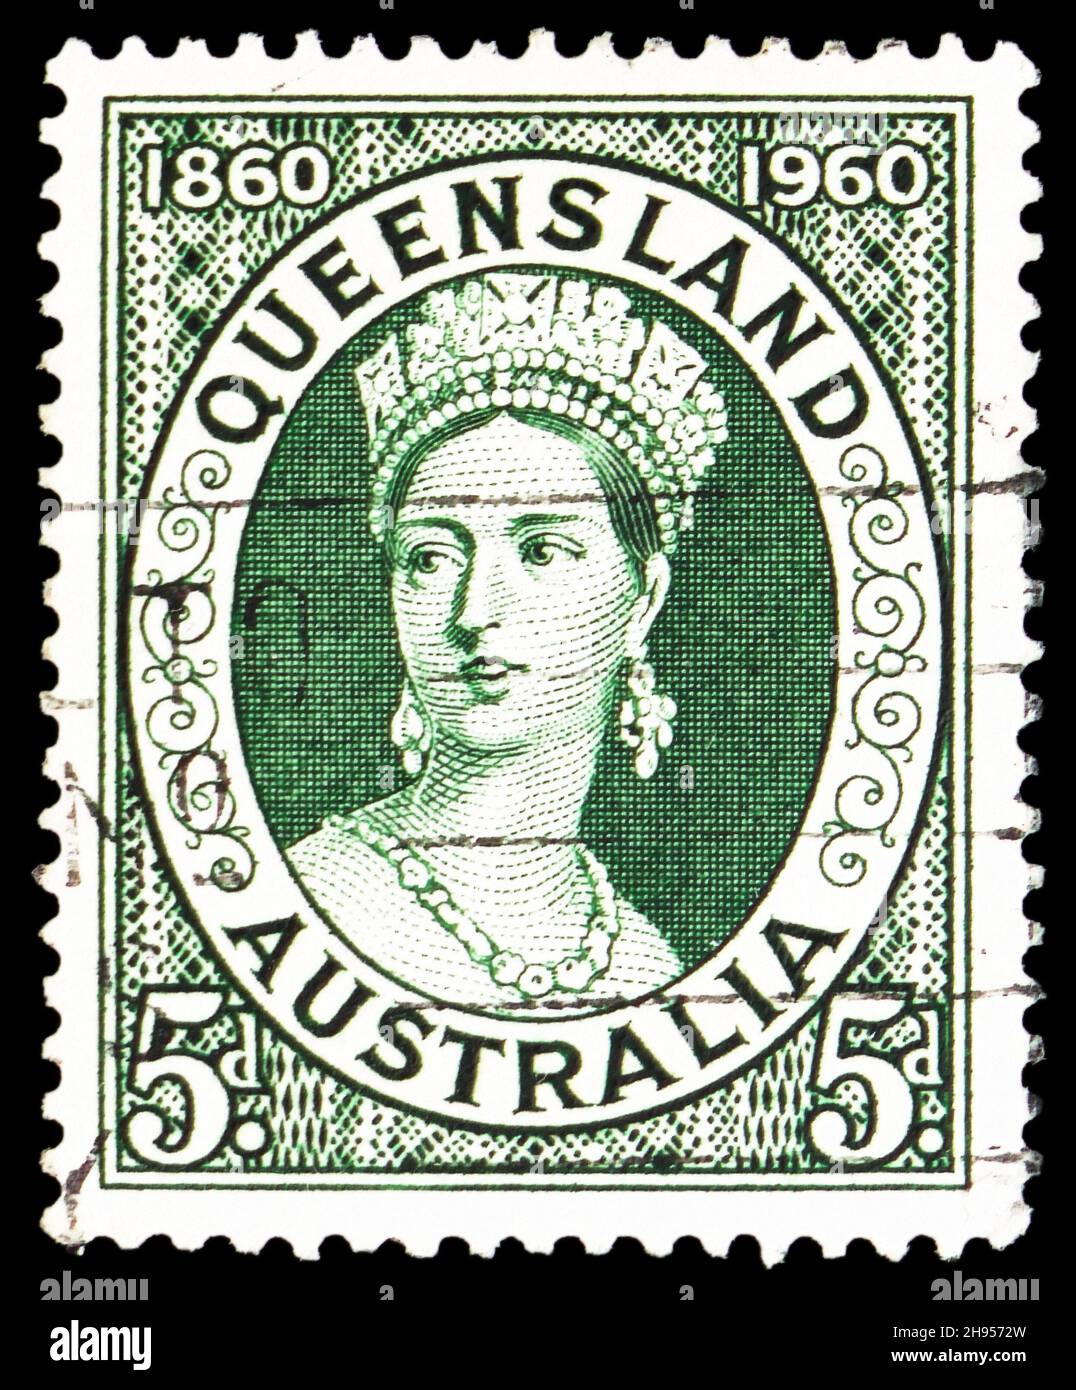 MOSKAU, RUSSLAND - 24. OKTOBER 2021: Die in Australien gedruckte Briefmarke zeigt den 100. Jahrestag der ersten Briefmarke von Queensland, um 1960 Stockfoto